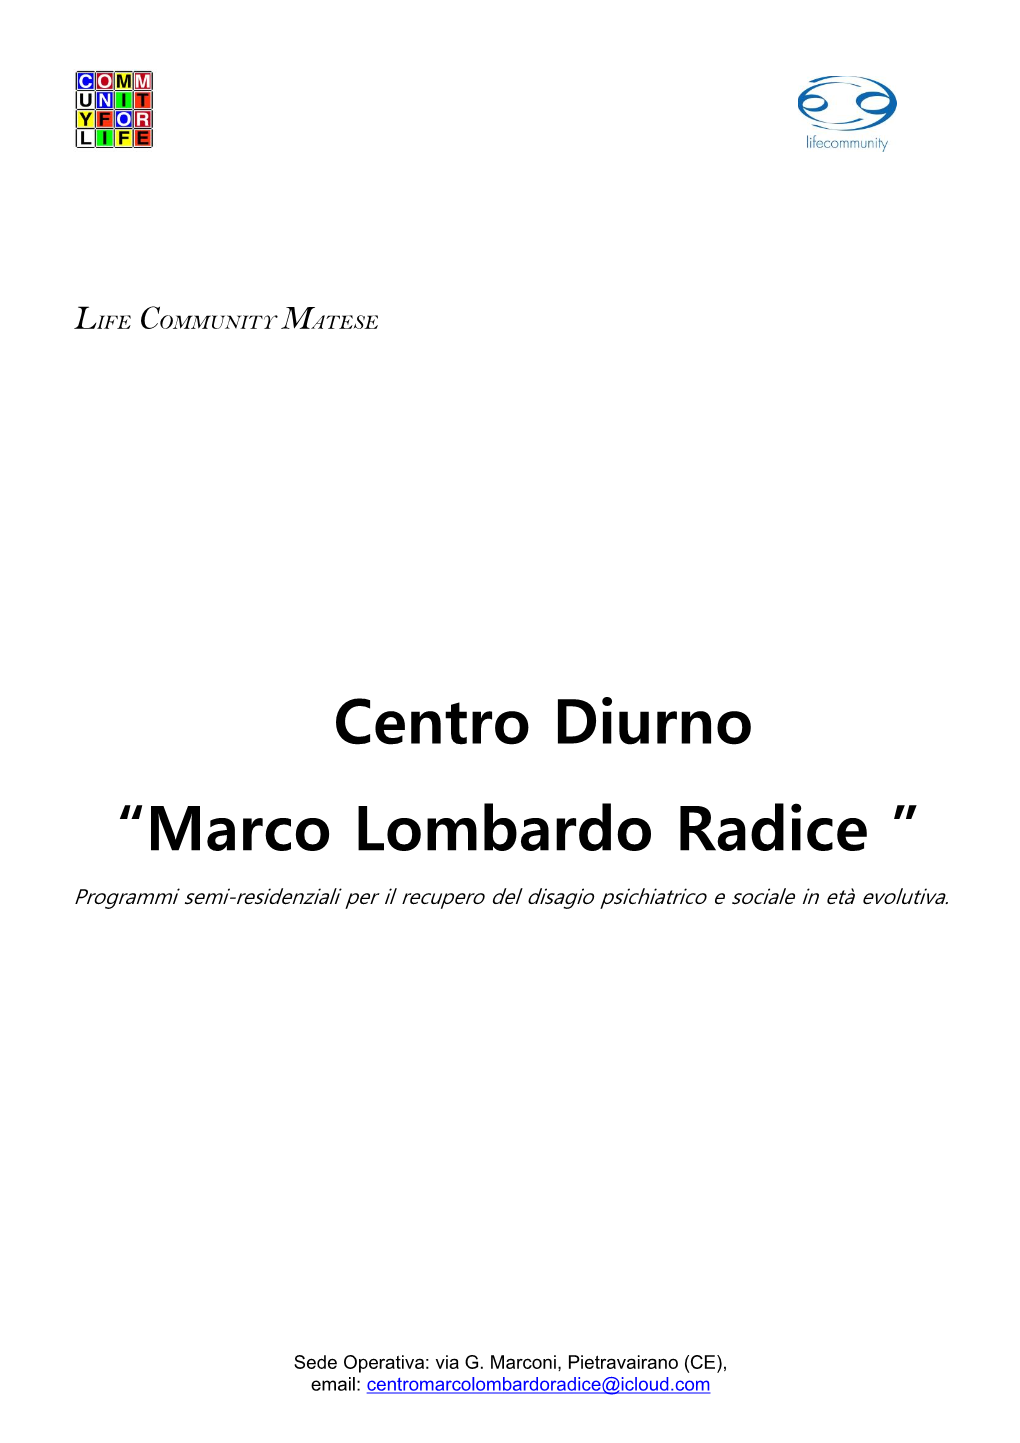 Centro Diurno “Marco Lombardo Radice ”